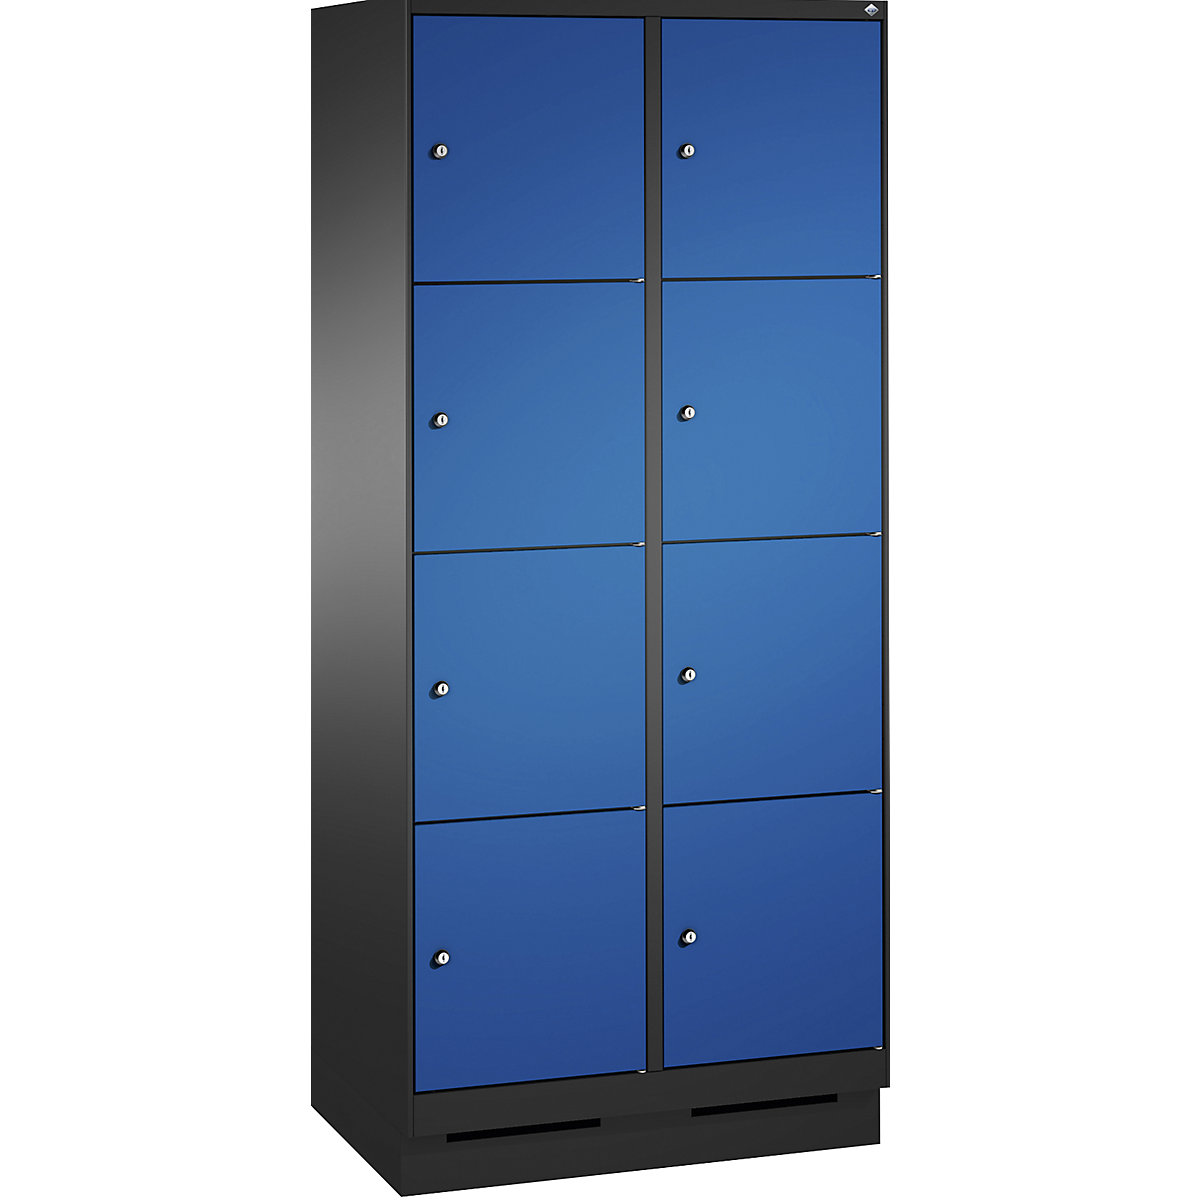 Armoire à casiers sur socle EVOLO – C+P, 2 compartiments, 4 casiers chacun, largeur compartiments 400 mm, gris noir / bleu gentiane-15